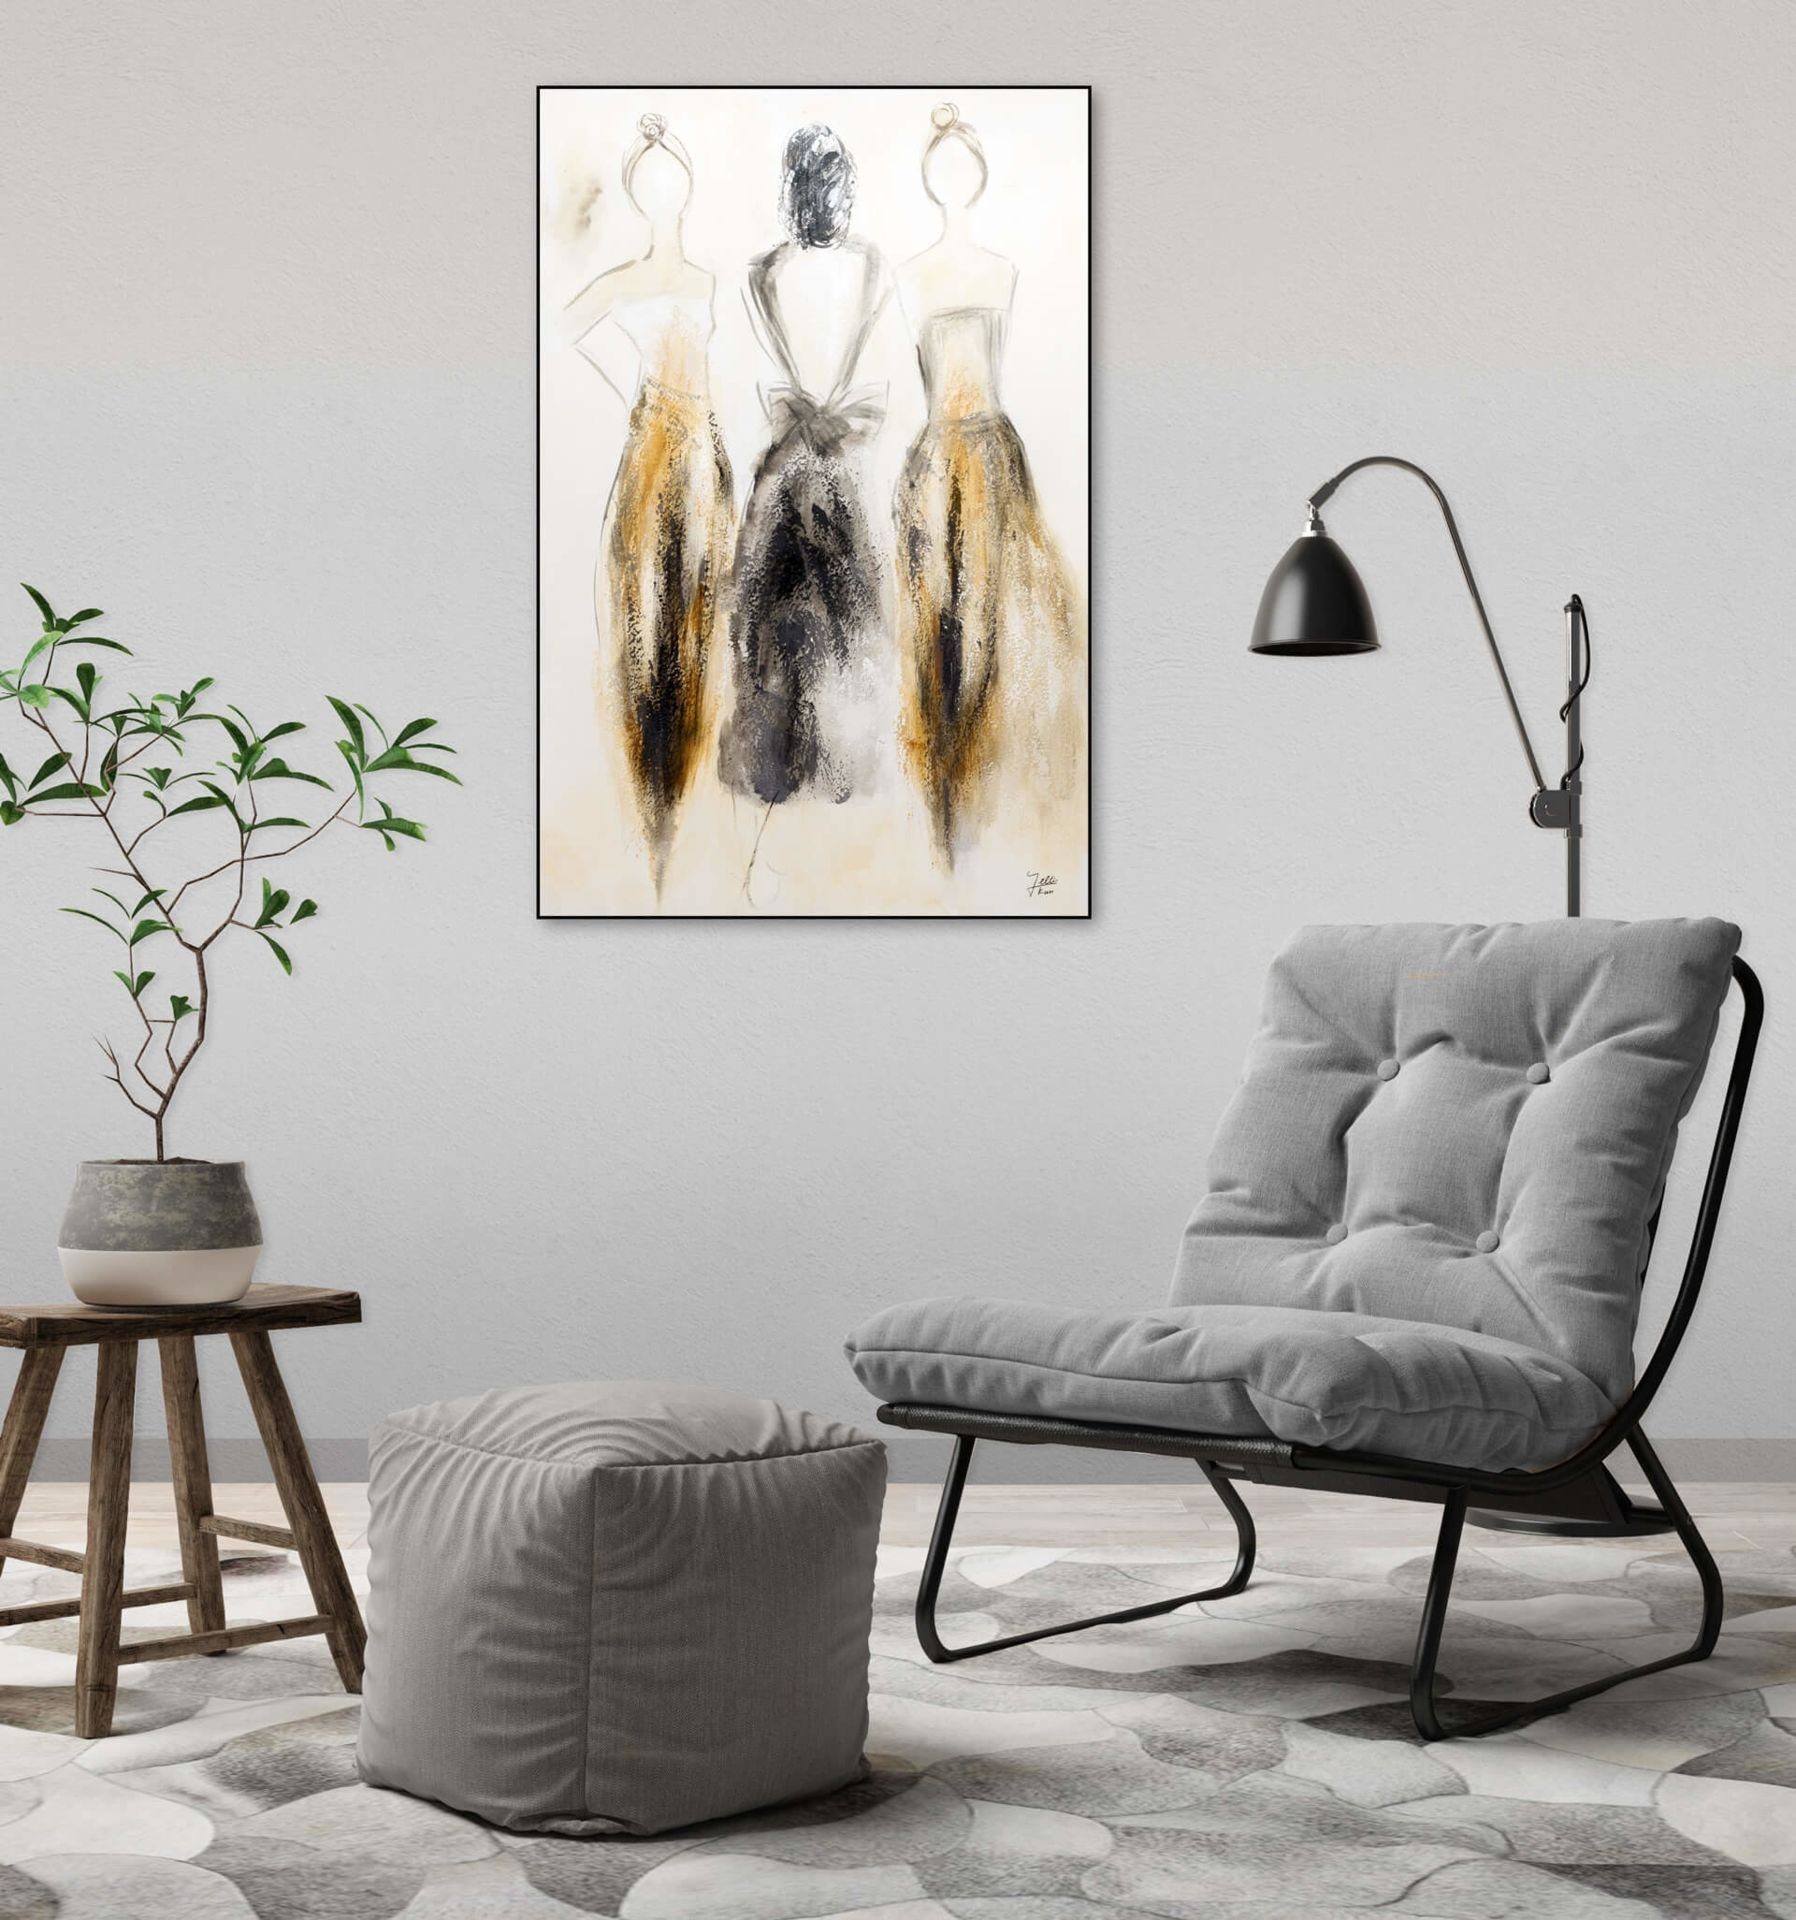 Wohnzimmer HANDGEMALT Trio cm, KUNSTLOFT Wandbild Gemälde Leinwandbild Traumtänzerinnen 100% 60x90